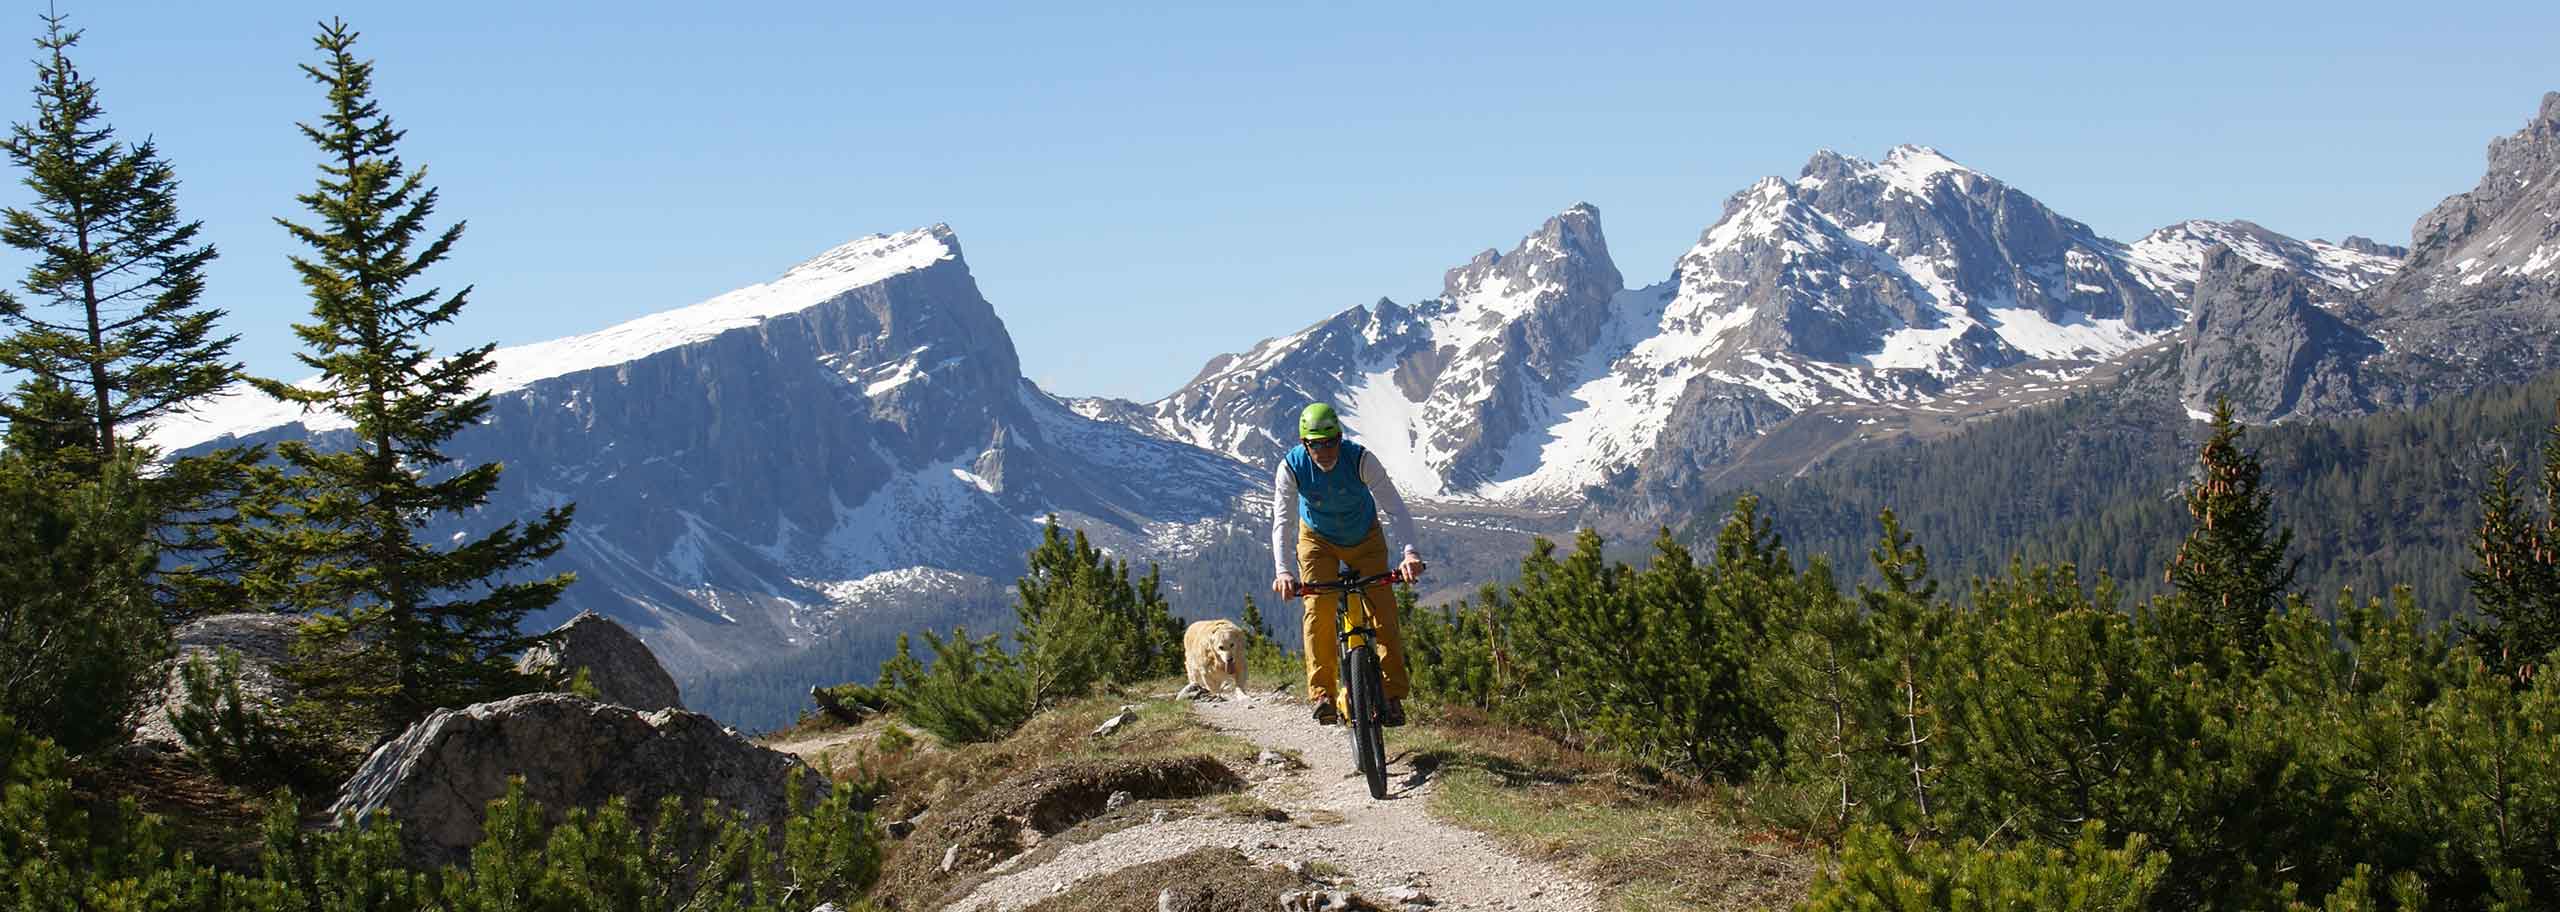 E-Bike a Cortina d’Ampezzo con Guida Alpina